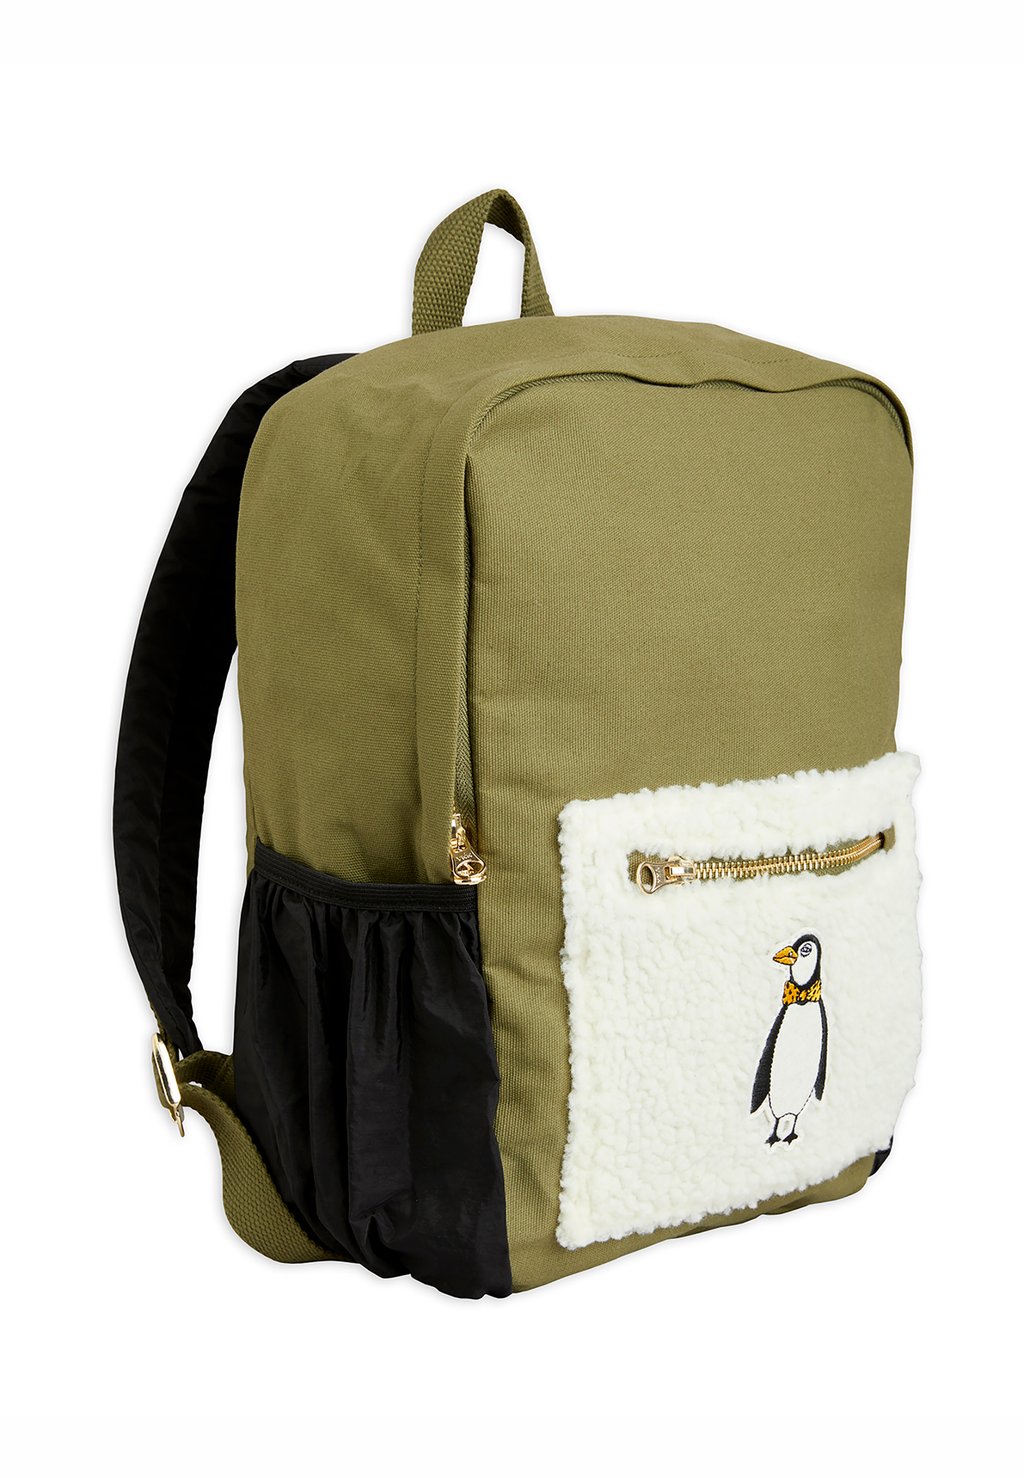 Рюкзак для путешествий Penguin Backpack Unisex Mini Rodini, зеленый рюкзак для путешествий backpack mio unisex molo цвет blue horses